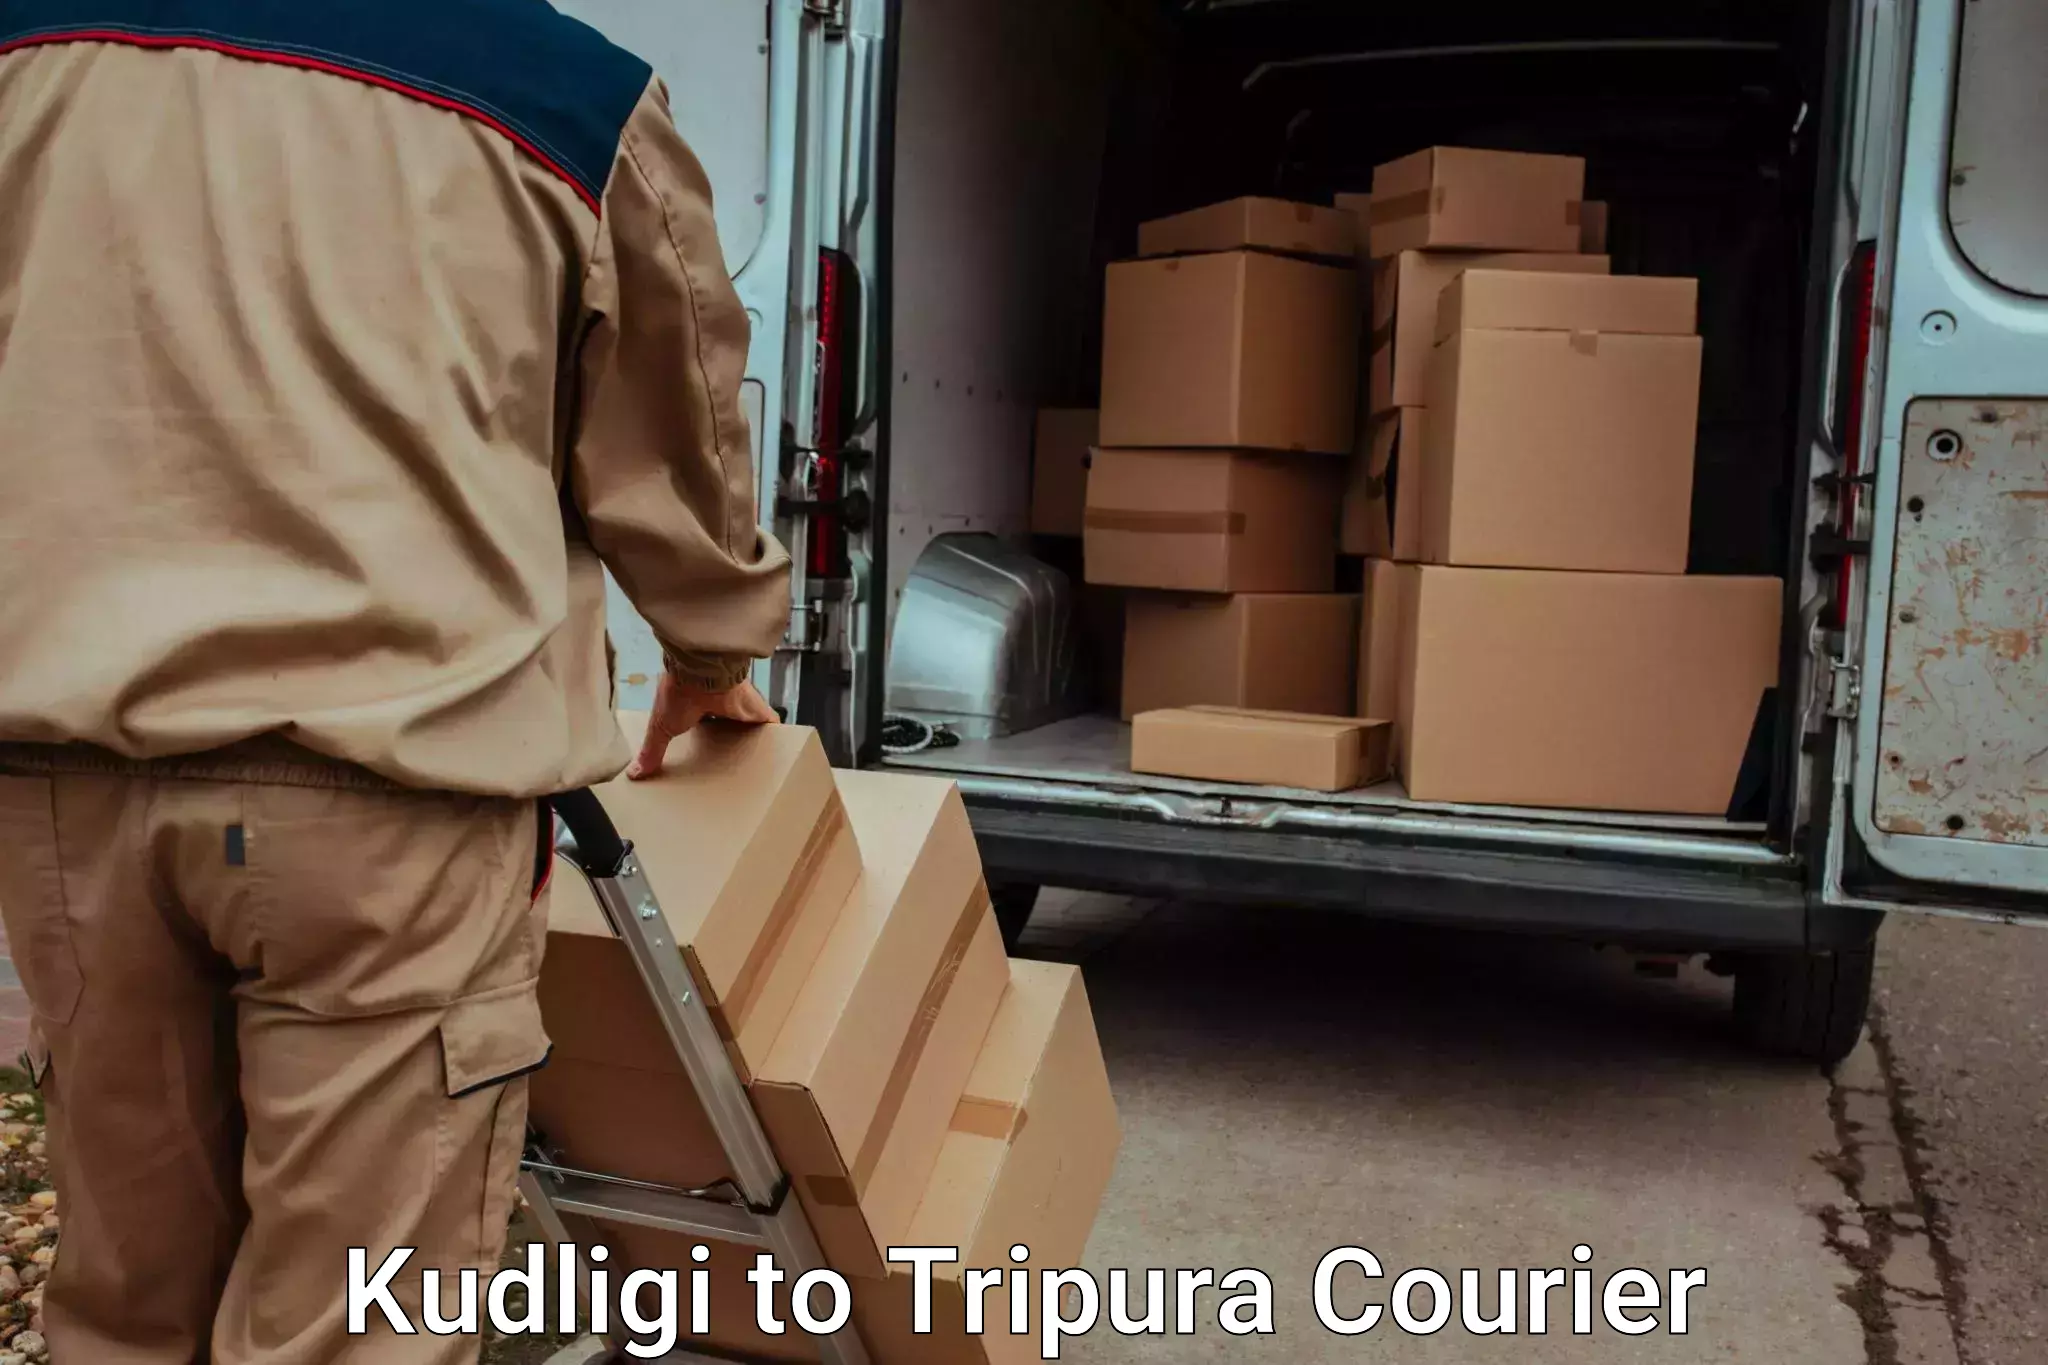 Hassle-free luggage shipping Kudligi to Tripura